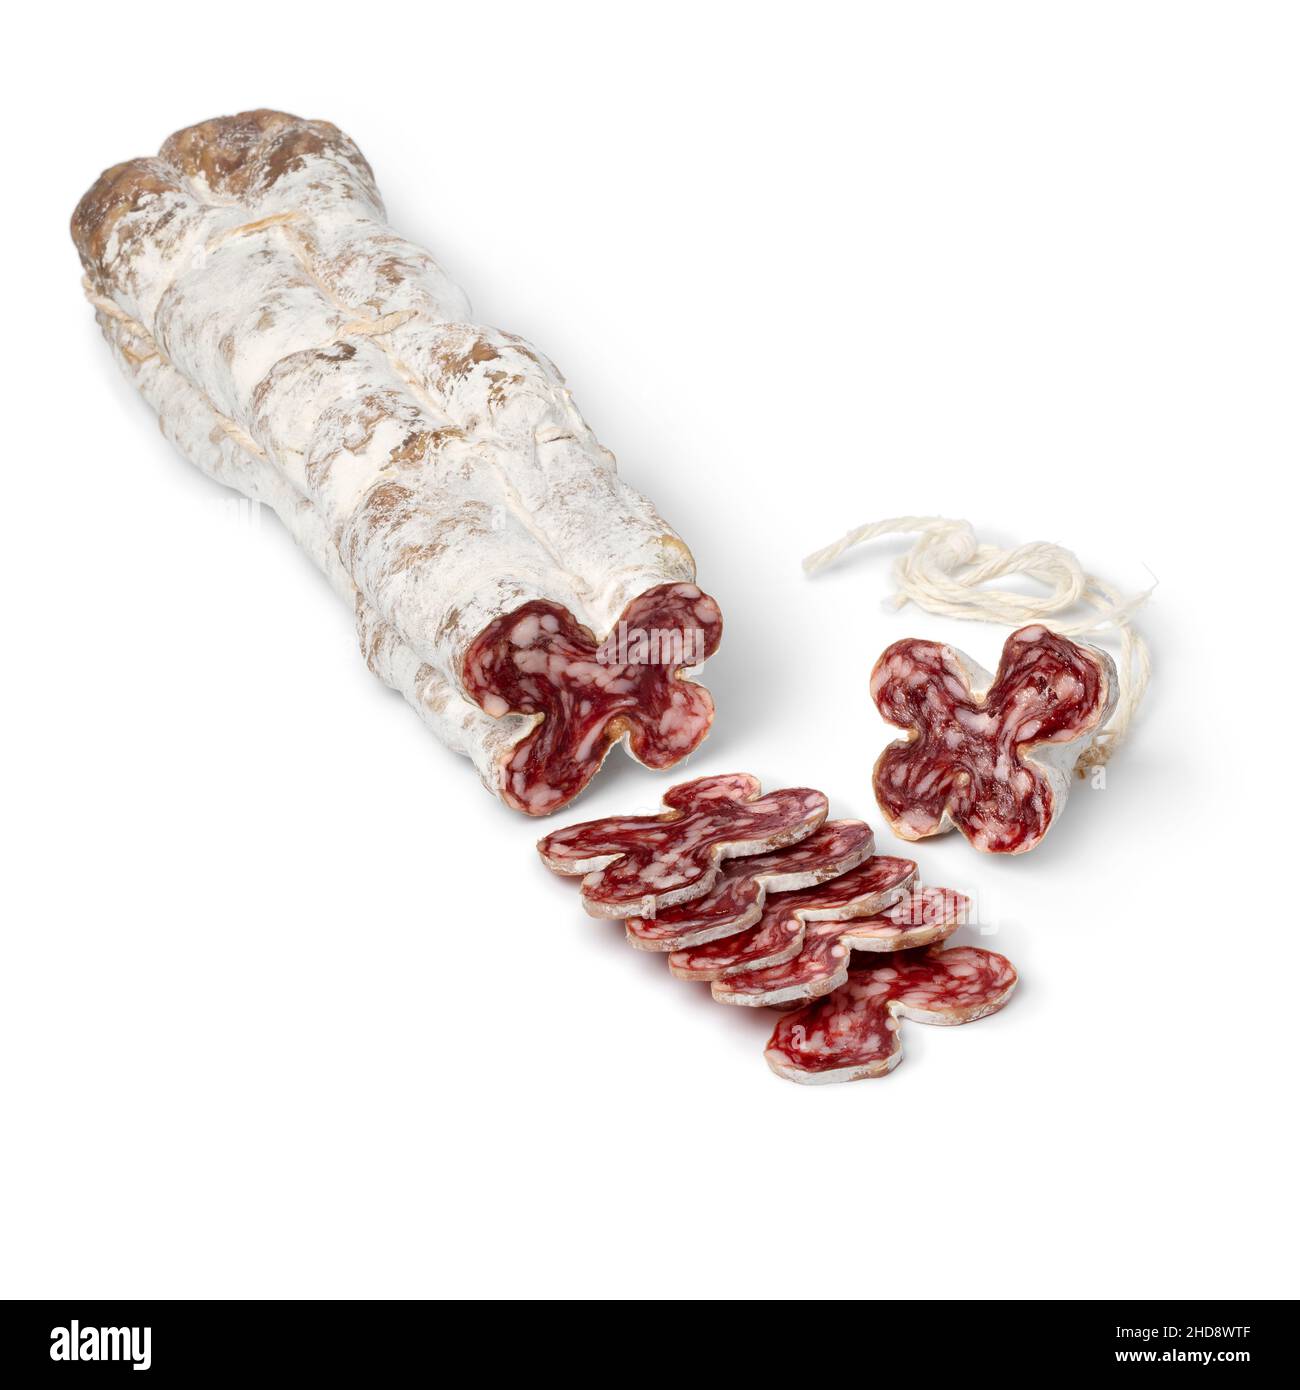 Salsiccia secca francese a fette, saucisson sec, isolata su sfondo bianco Foto Stock